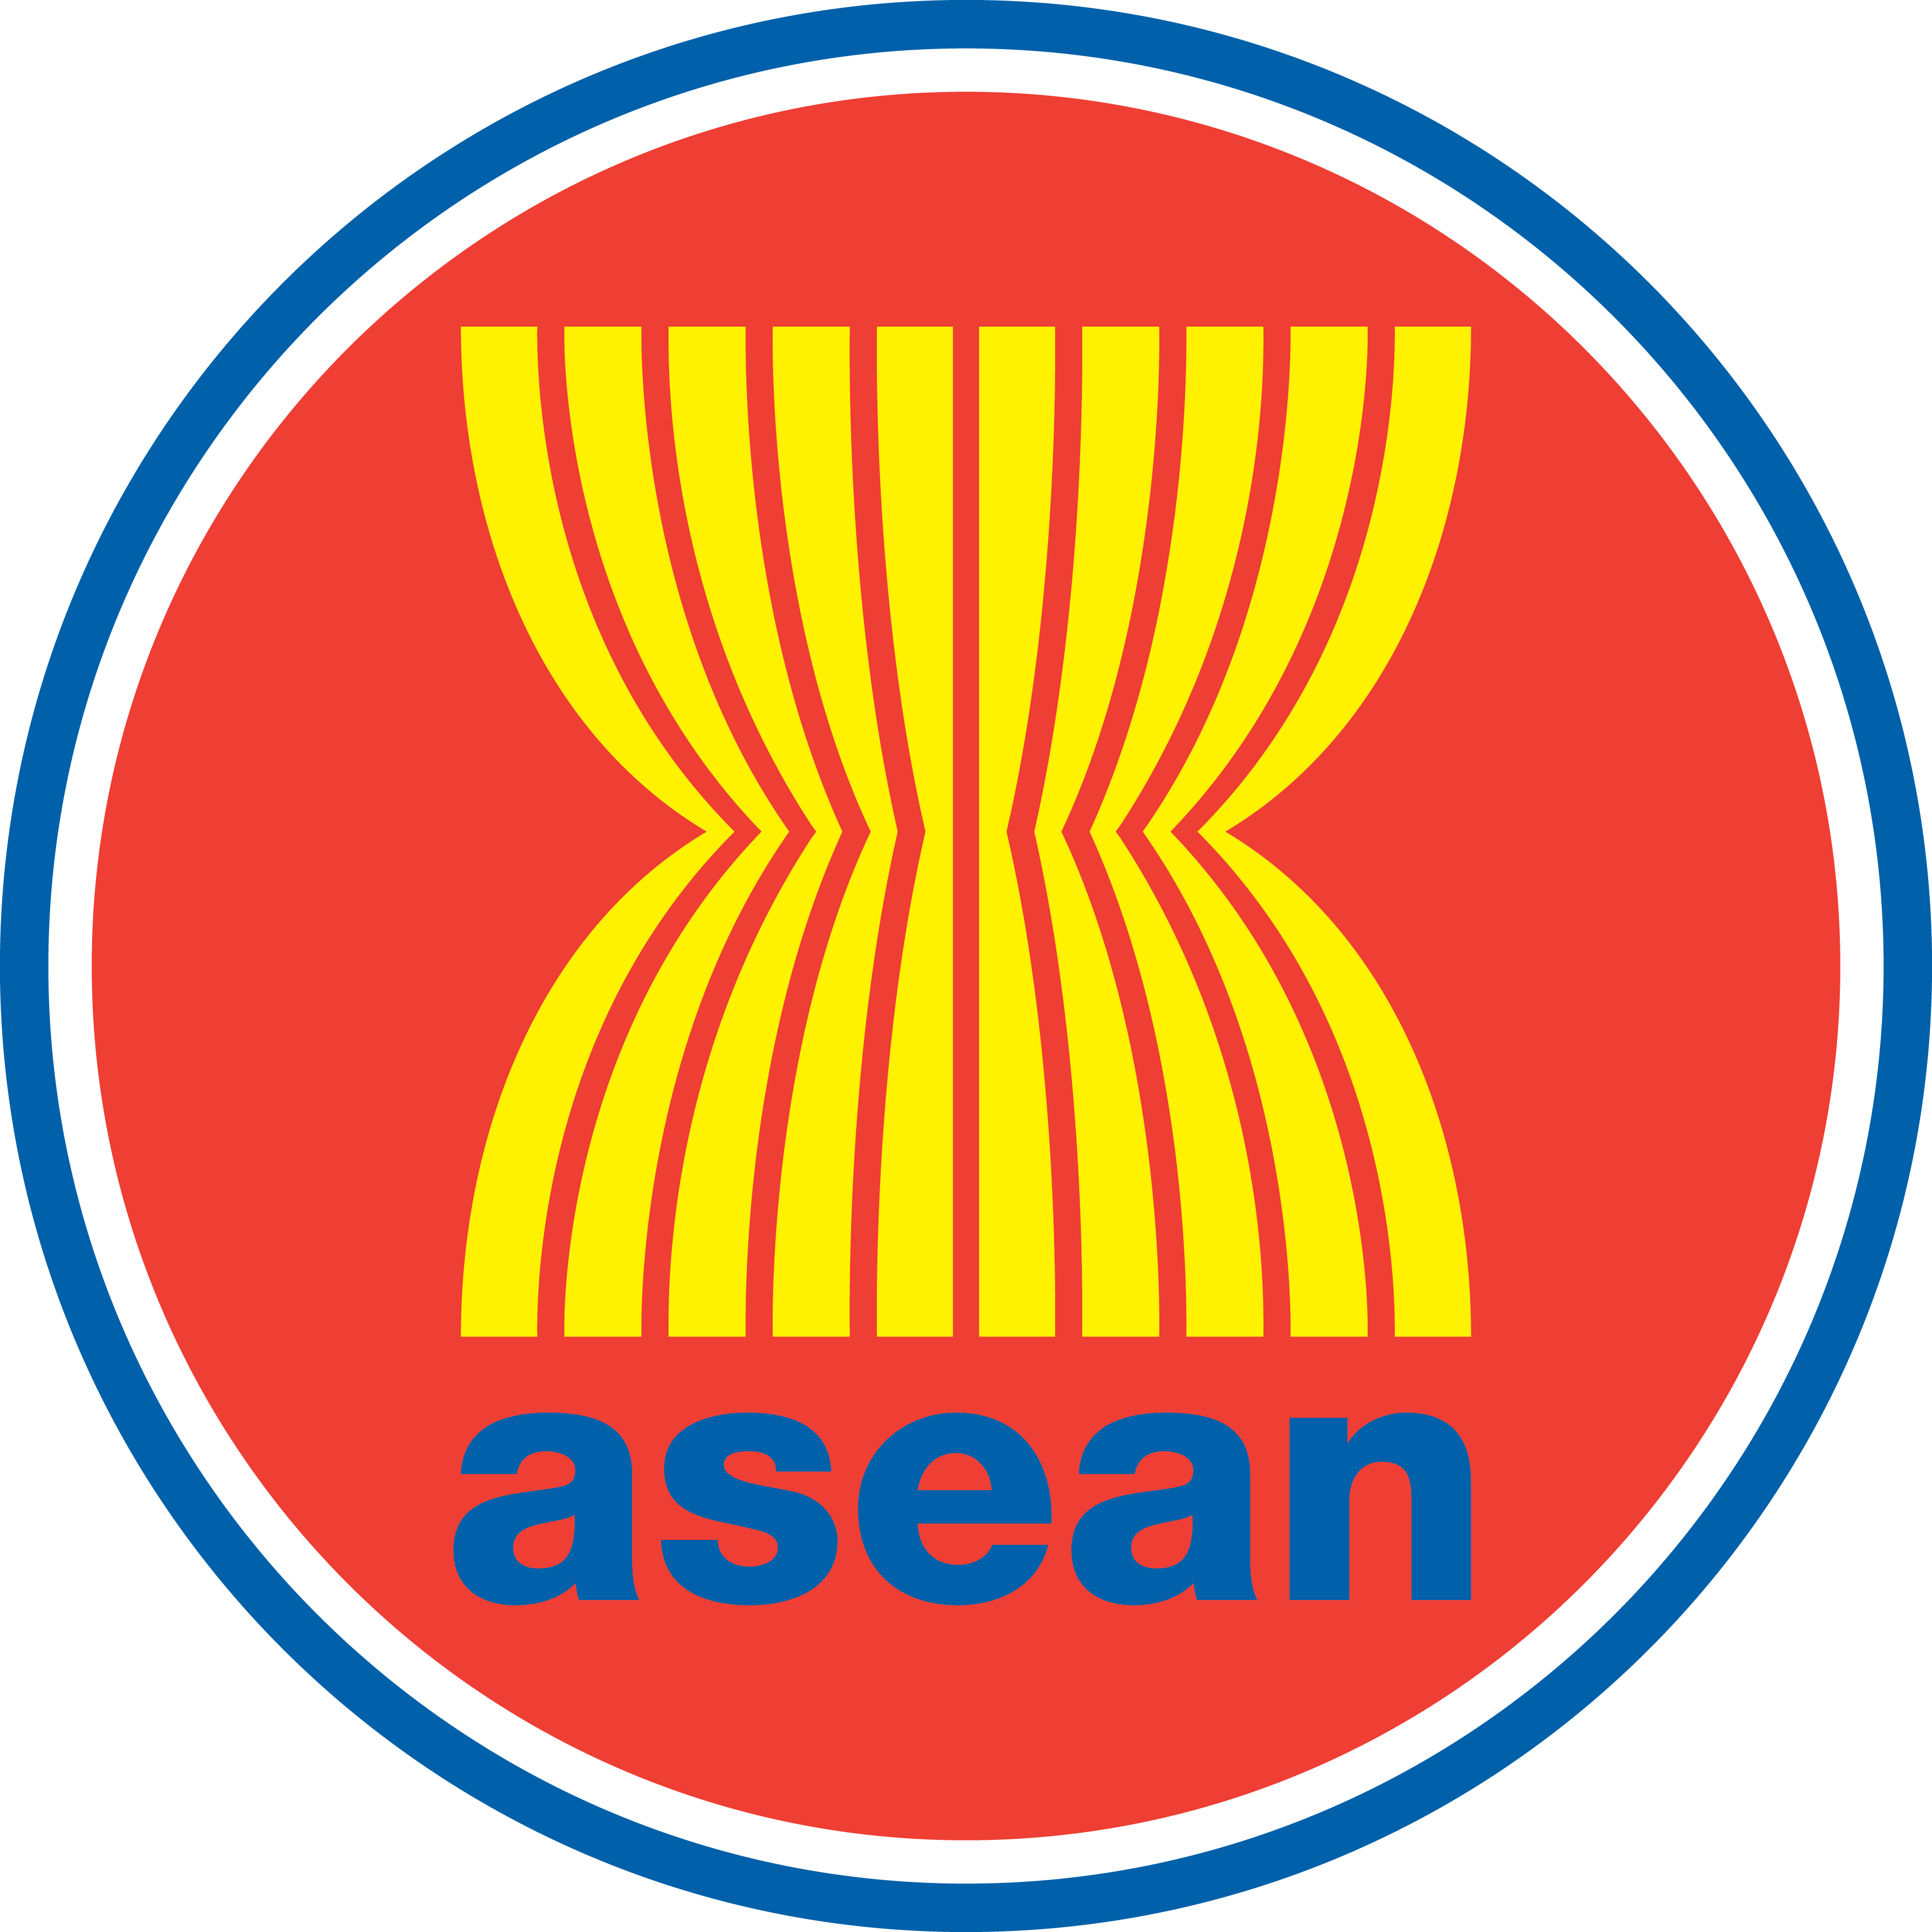 Hiệp định về thương mại dịch vụ của ASEAN (ATISA)